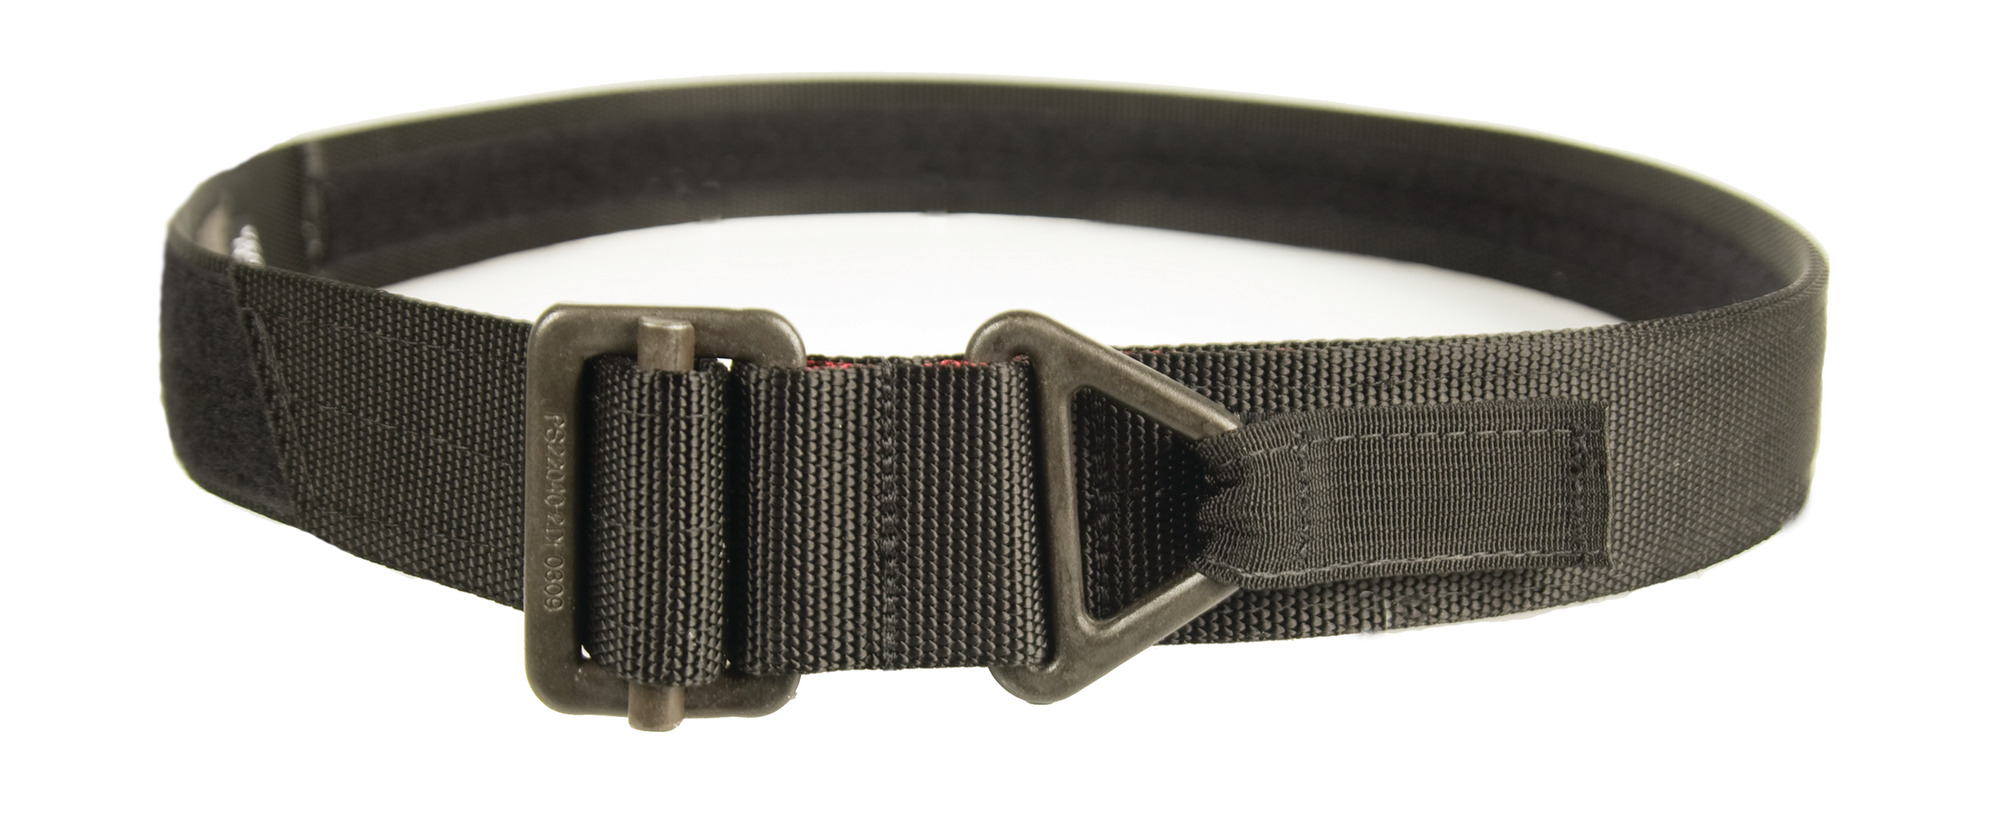 Blackhawk Tactical Instructors Black Riggers Adjustable Belt Size Medium M 